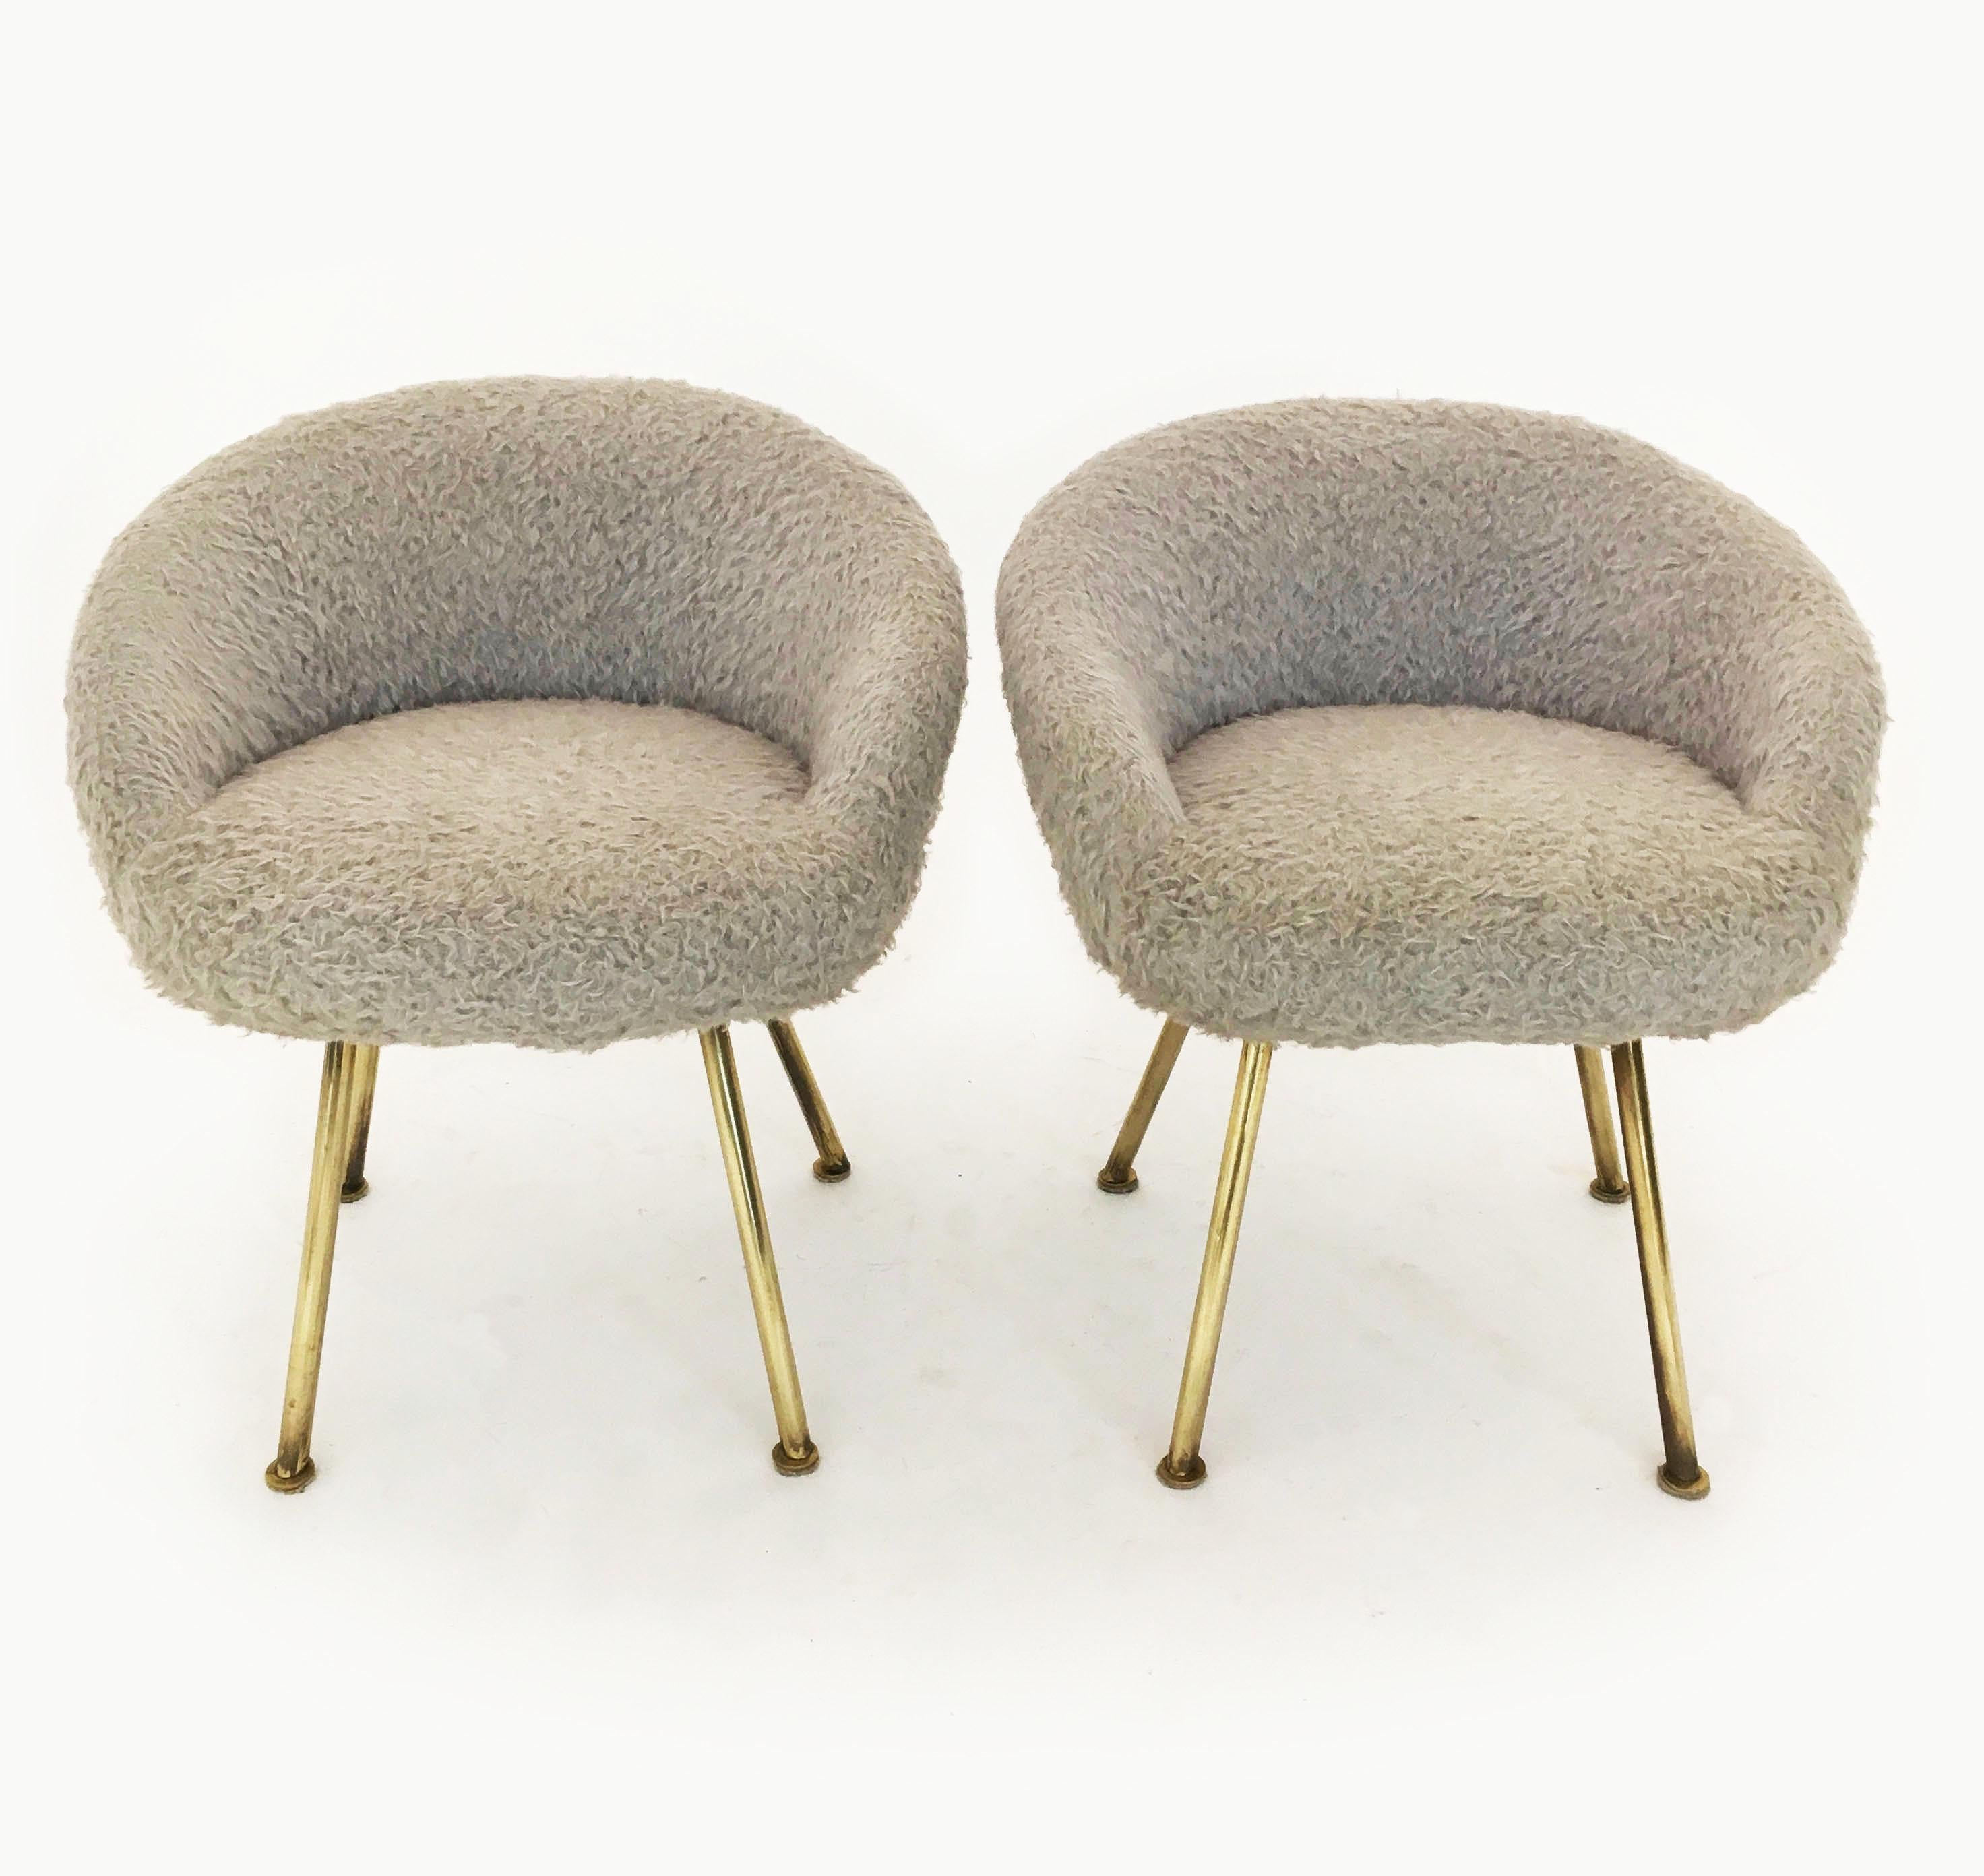 Vanity fur stools pair, France, 1950s.